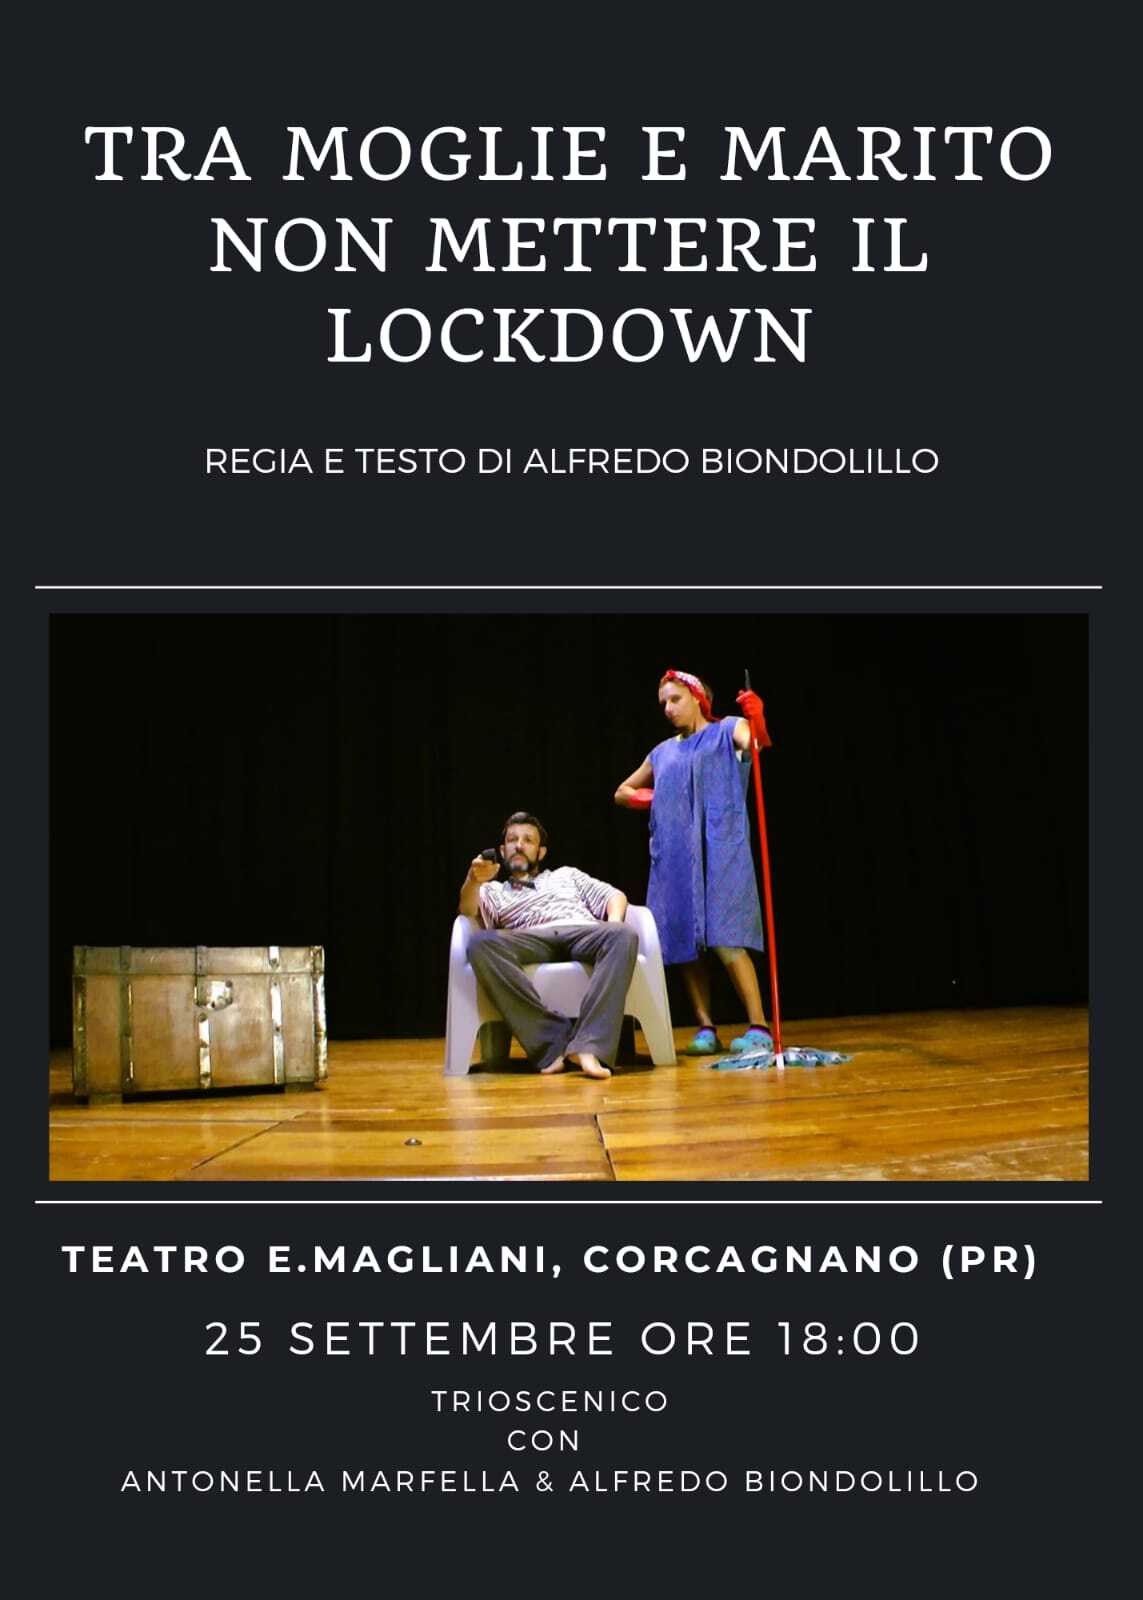 Tra moglie e marito non mettere il lockdown al teatro Ennio Magliani